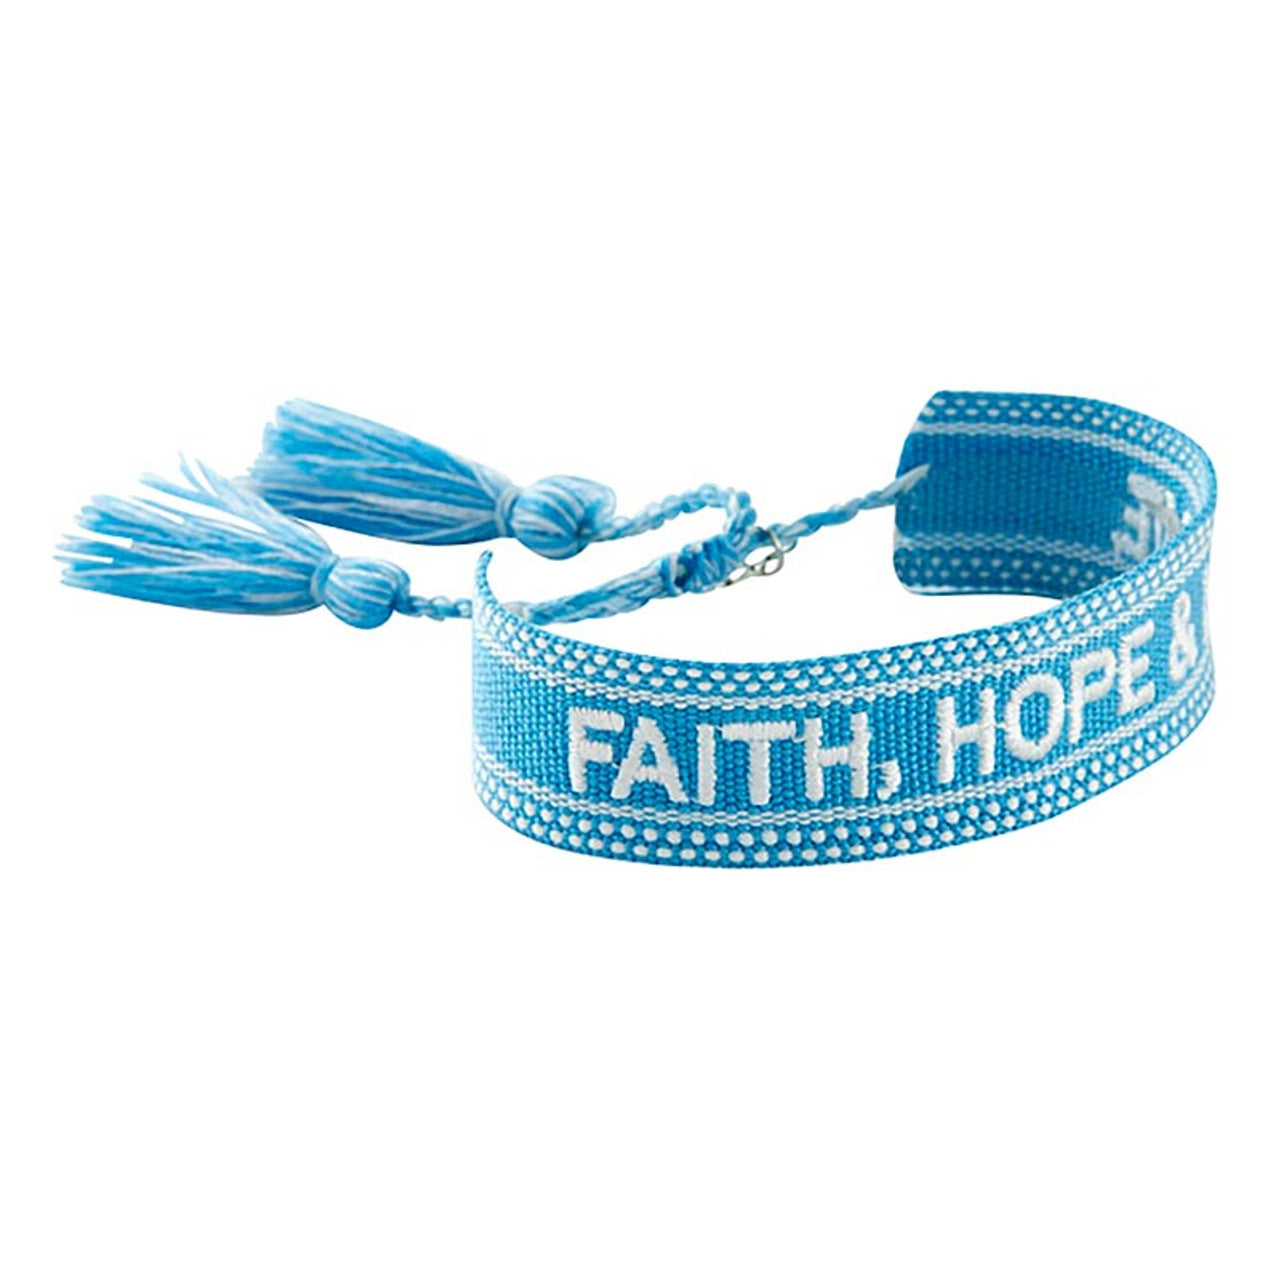 "Faith, Hope, & Love" Woven Adjustable Bracelet with Heart Charm